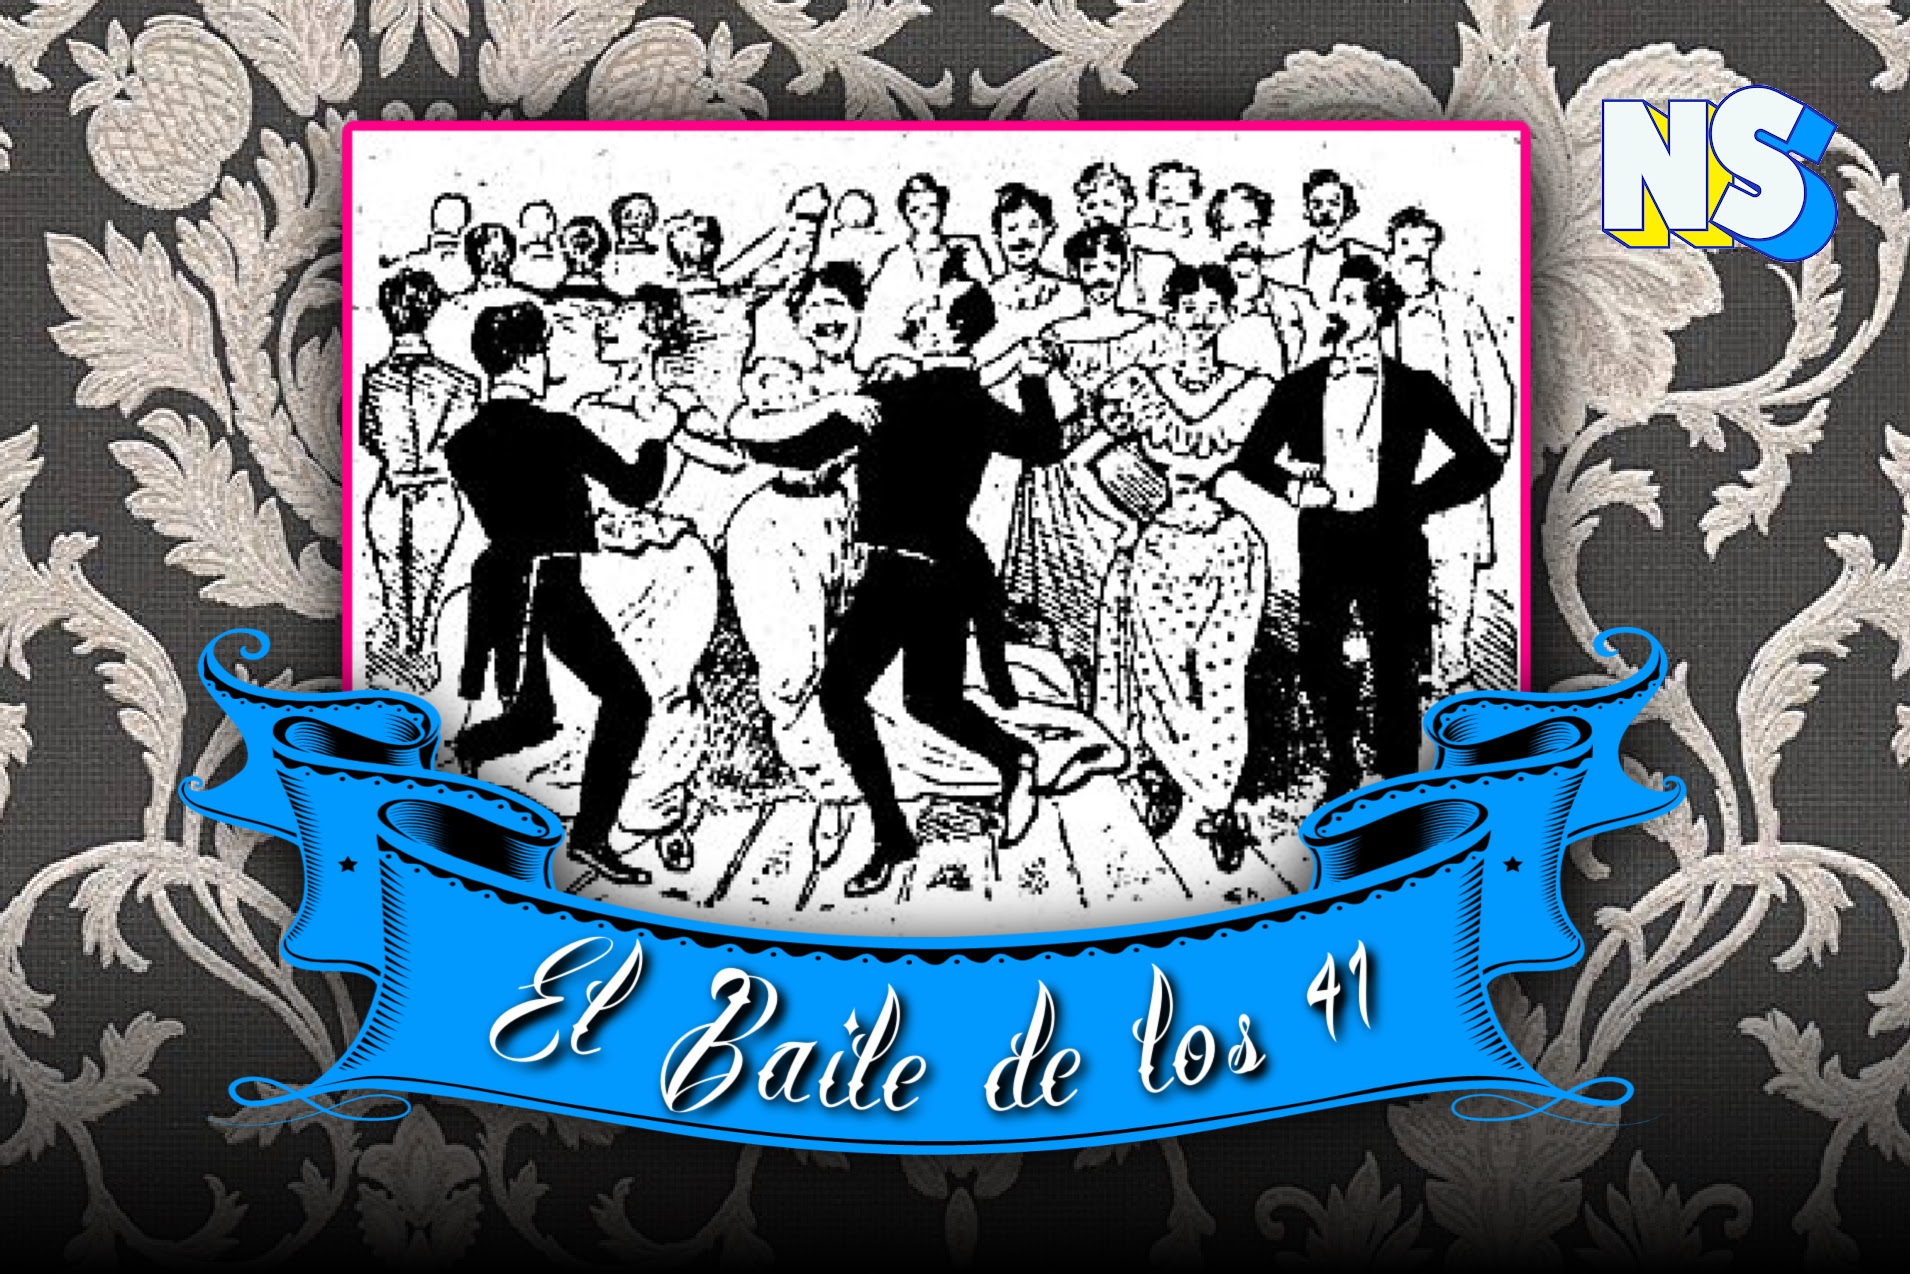 El Baile de los 41 How a Gay Dance Marked Mexican History